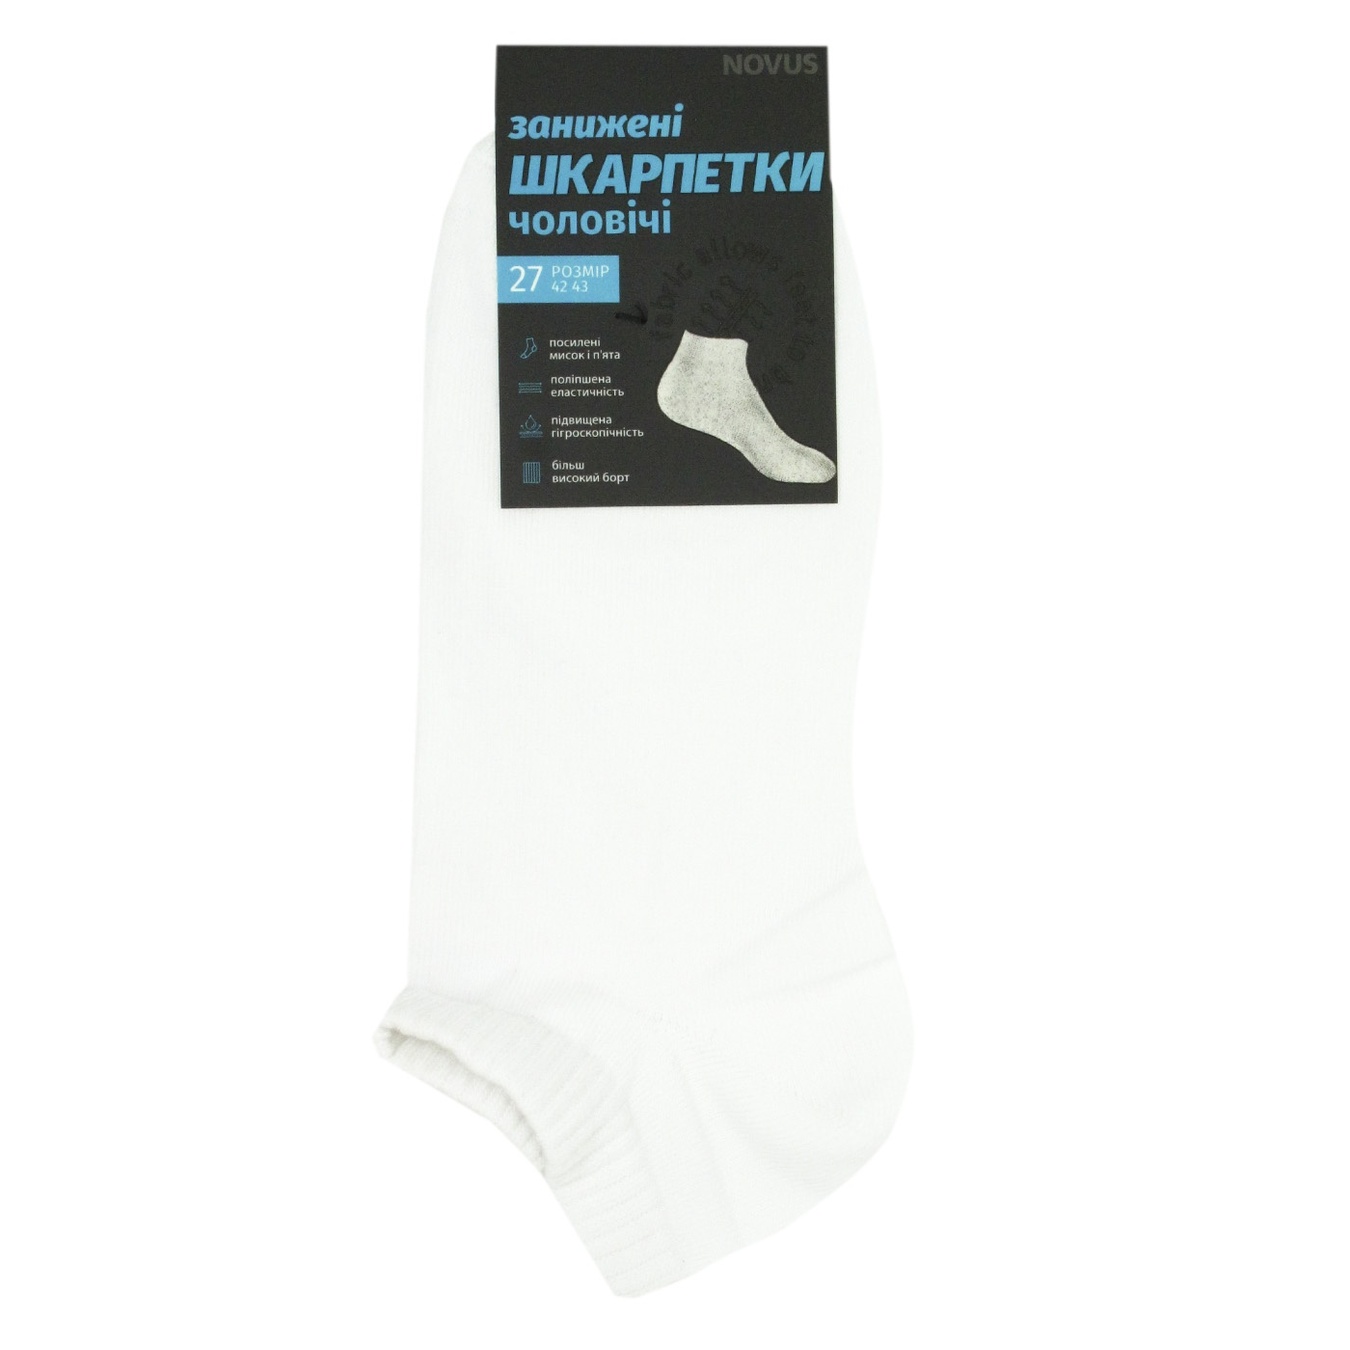 Men's socks NOVUS demi-season understated size 27 white